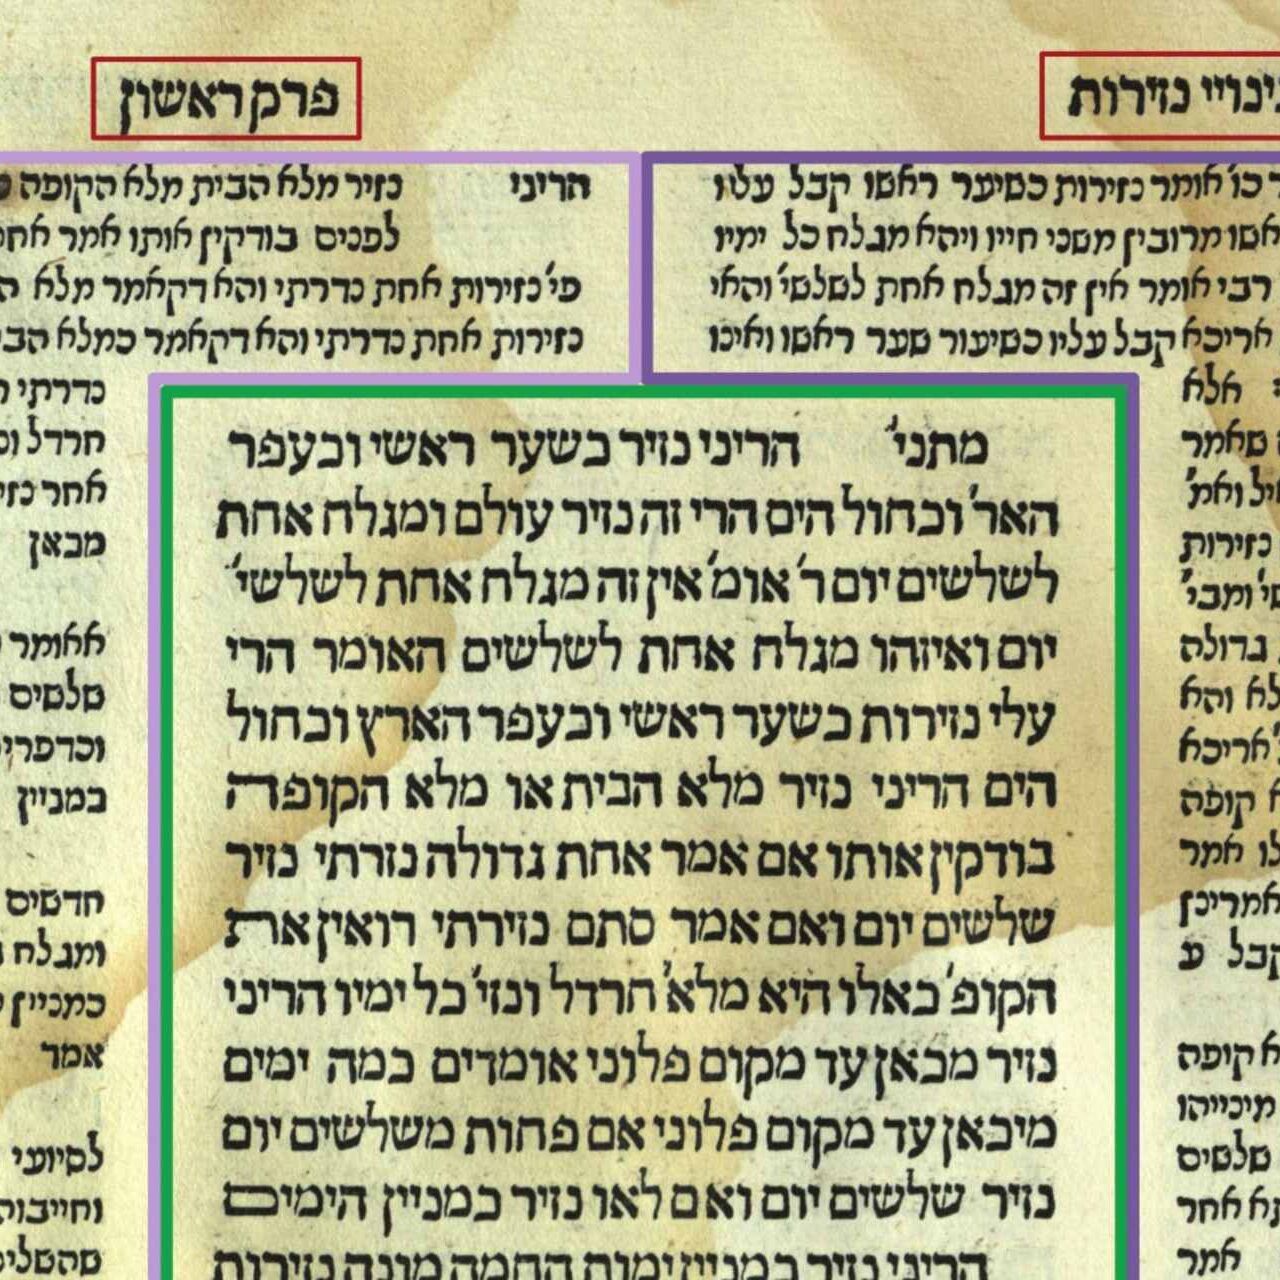 Uma imagem do Talmud judaico com os comentários nas margens